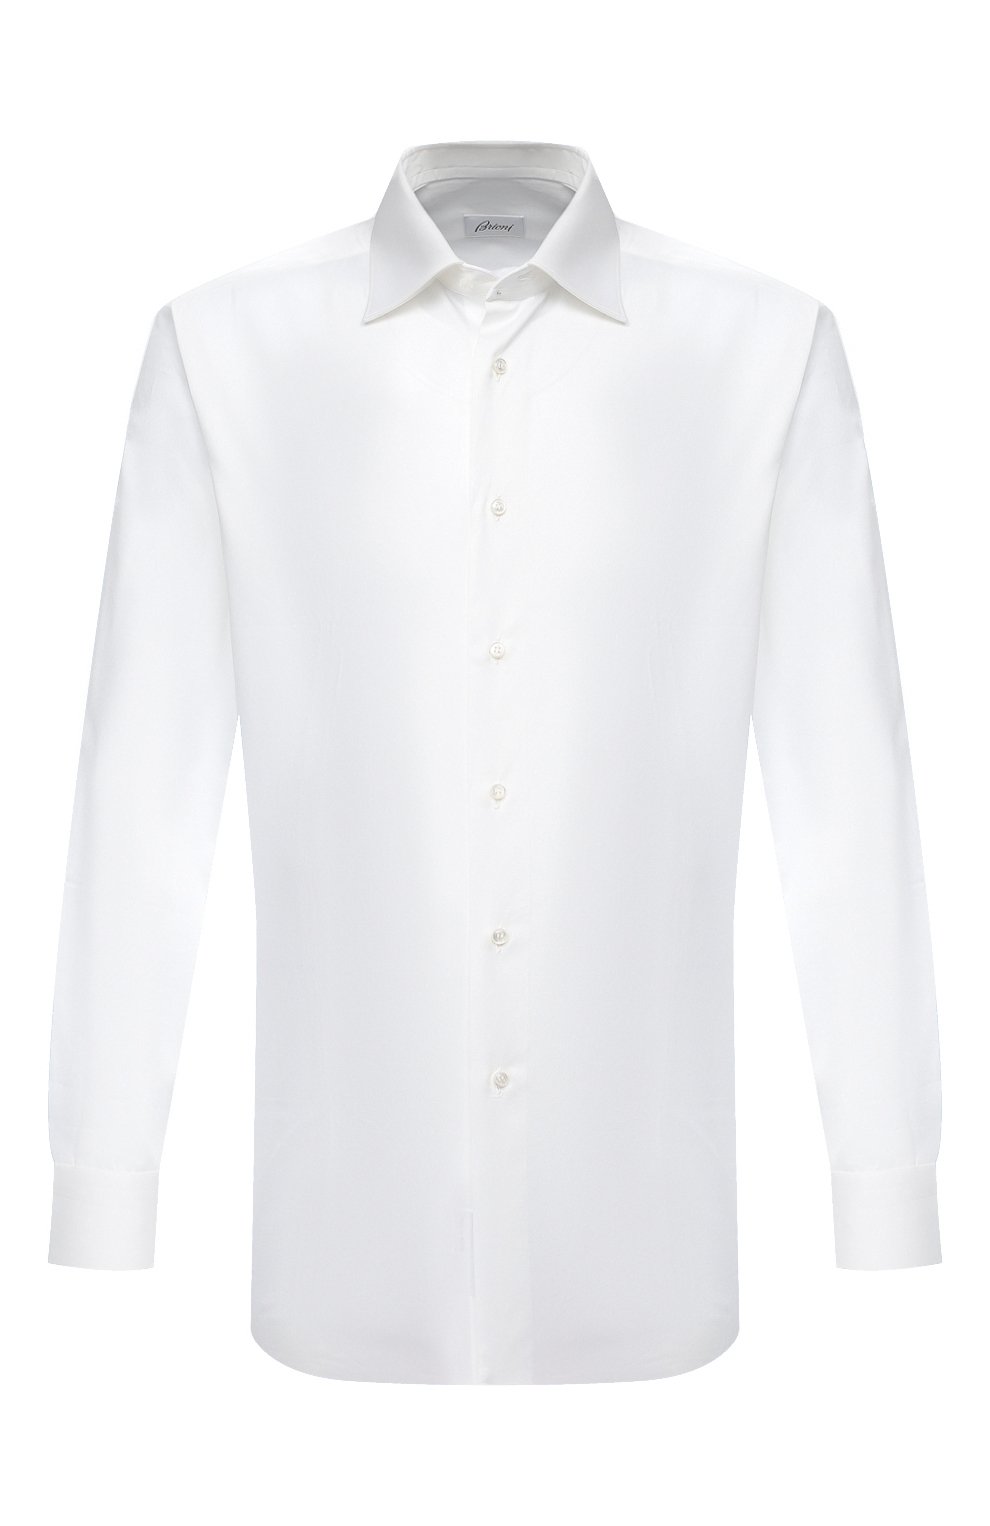 Рубашки Brioni, Хлопковая сорочка с воротником кент Brioni, Италия, Белый, Хлопок: 100%;, 3923772  - купить